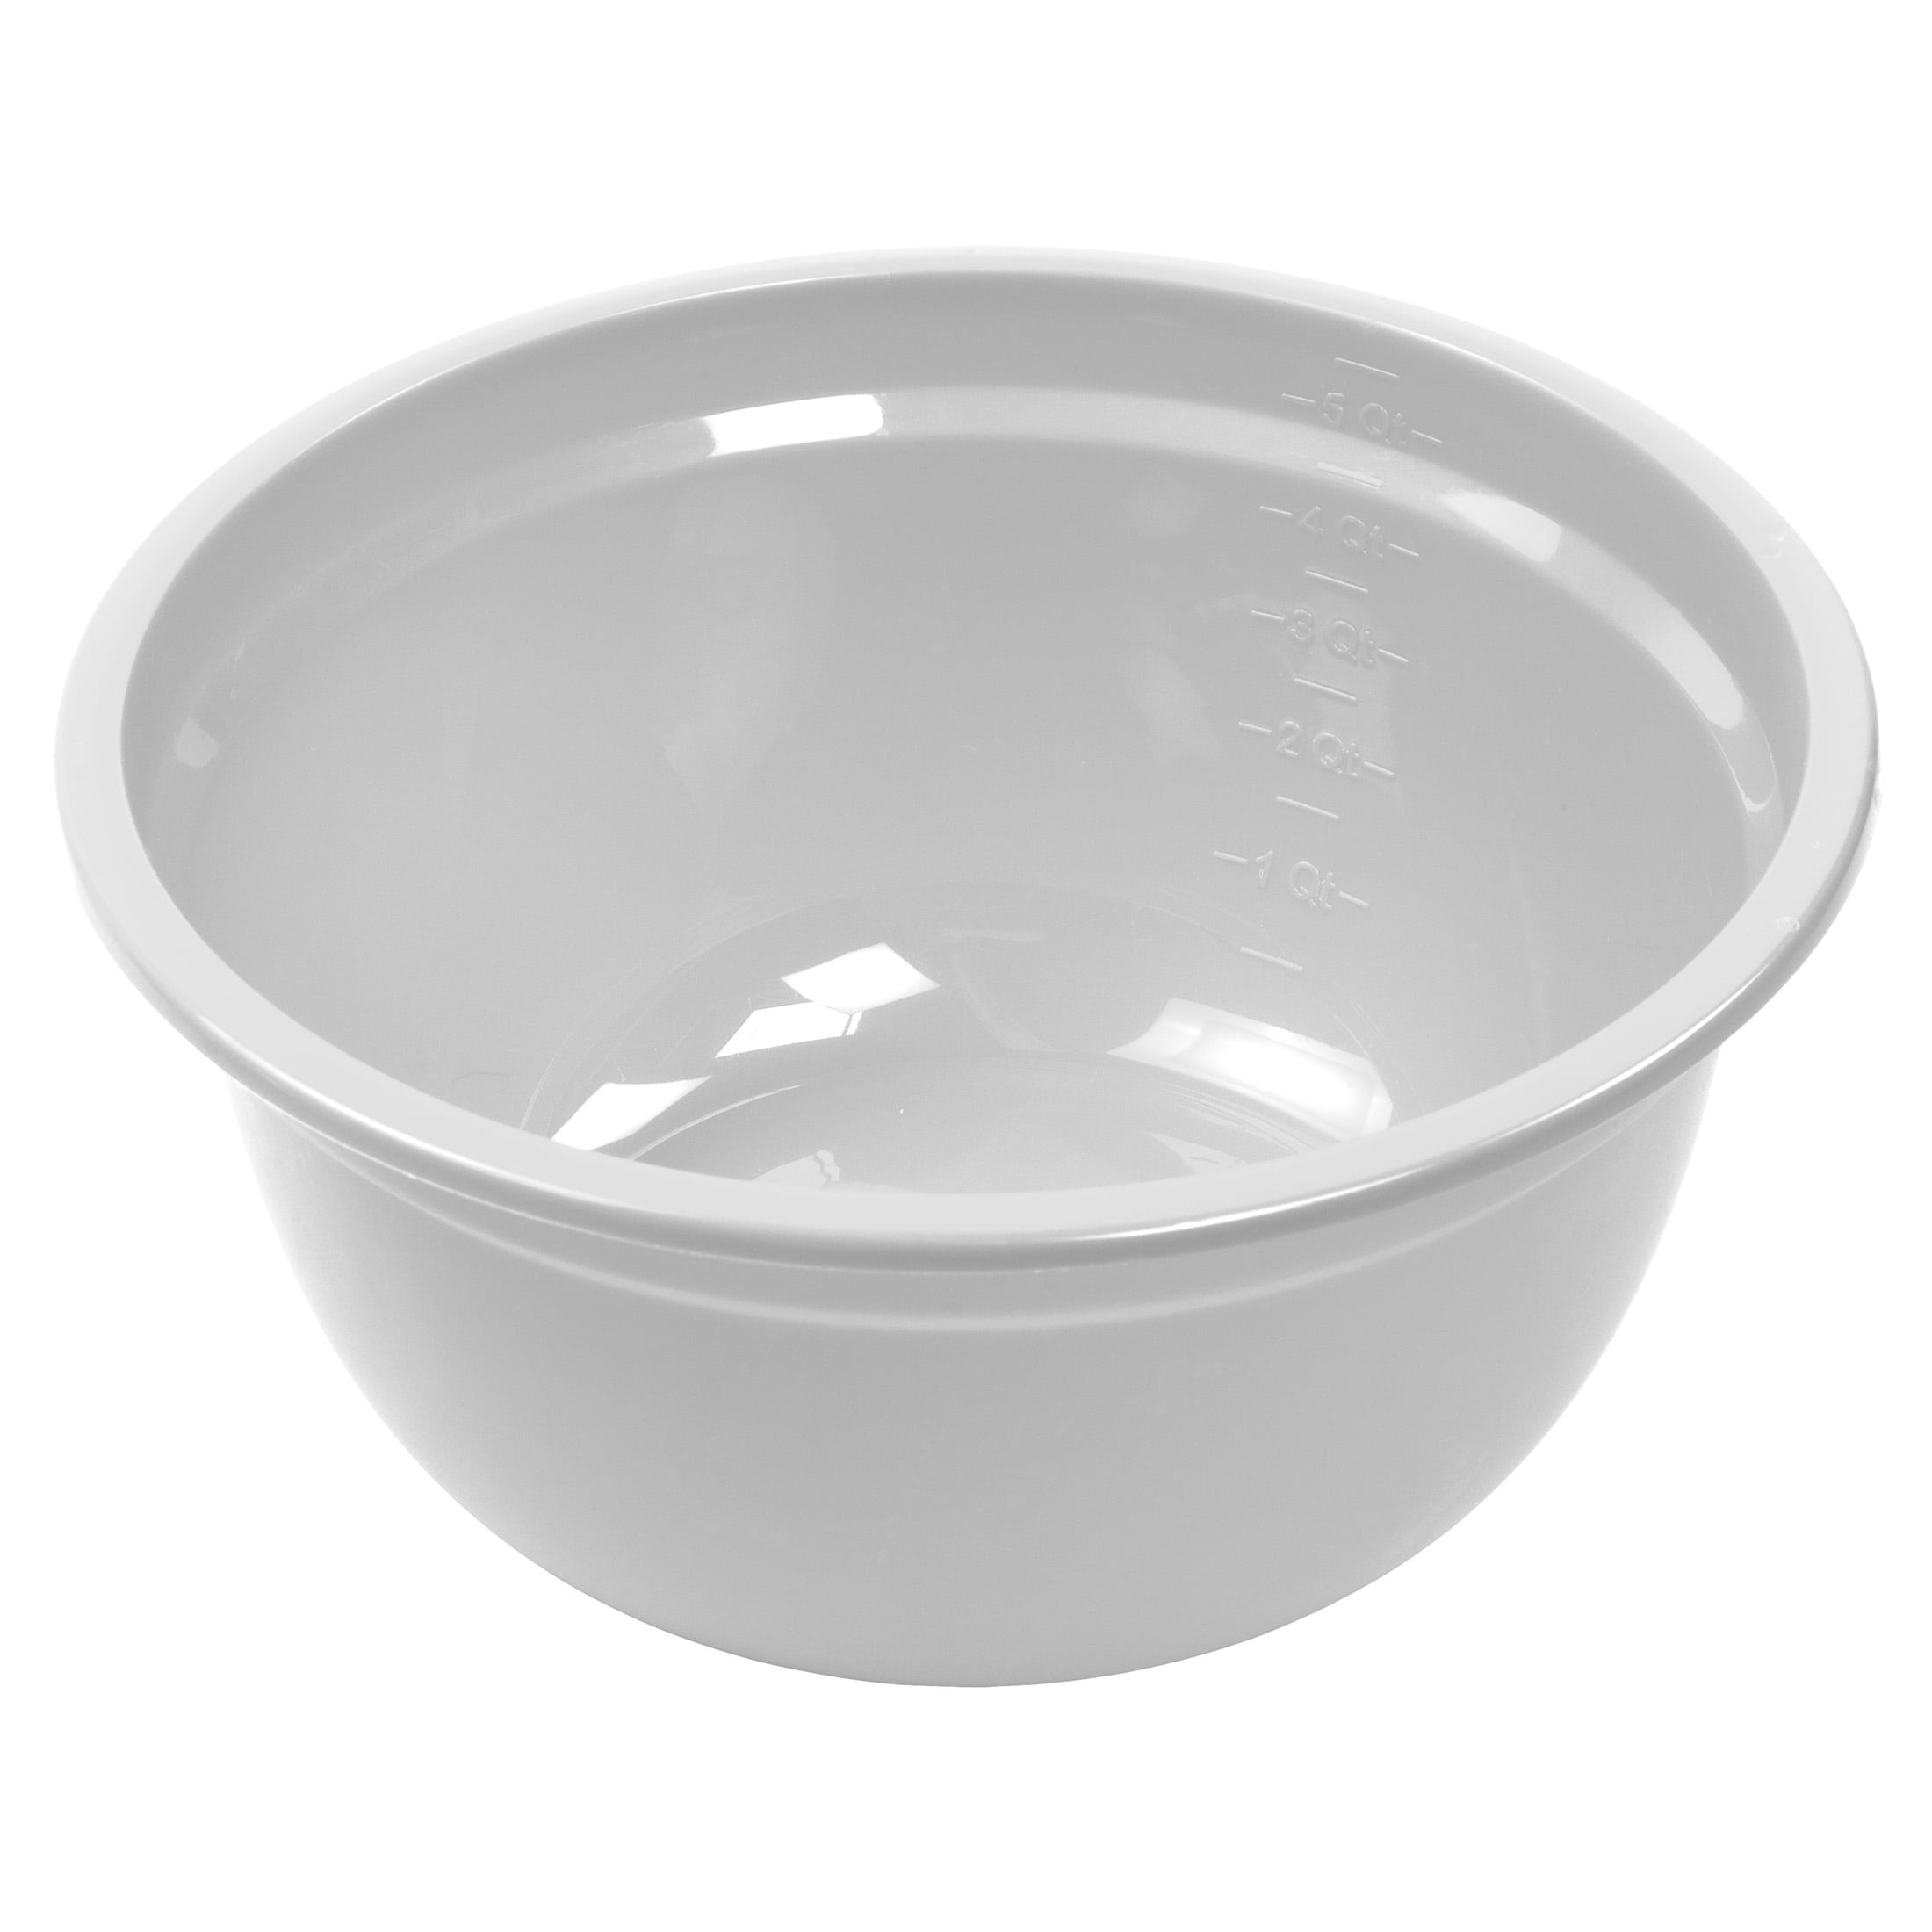  Sterilite Plastic Bowl 6 Qt. White Bulk 2 pack: Home